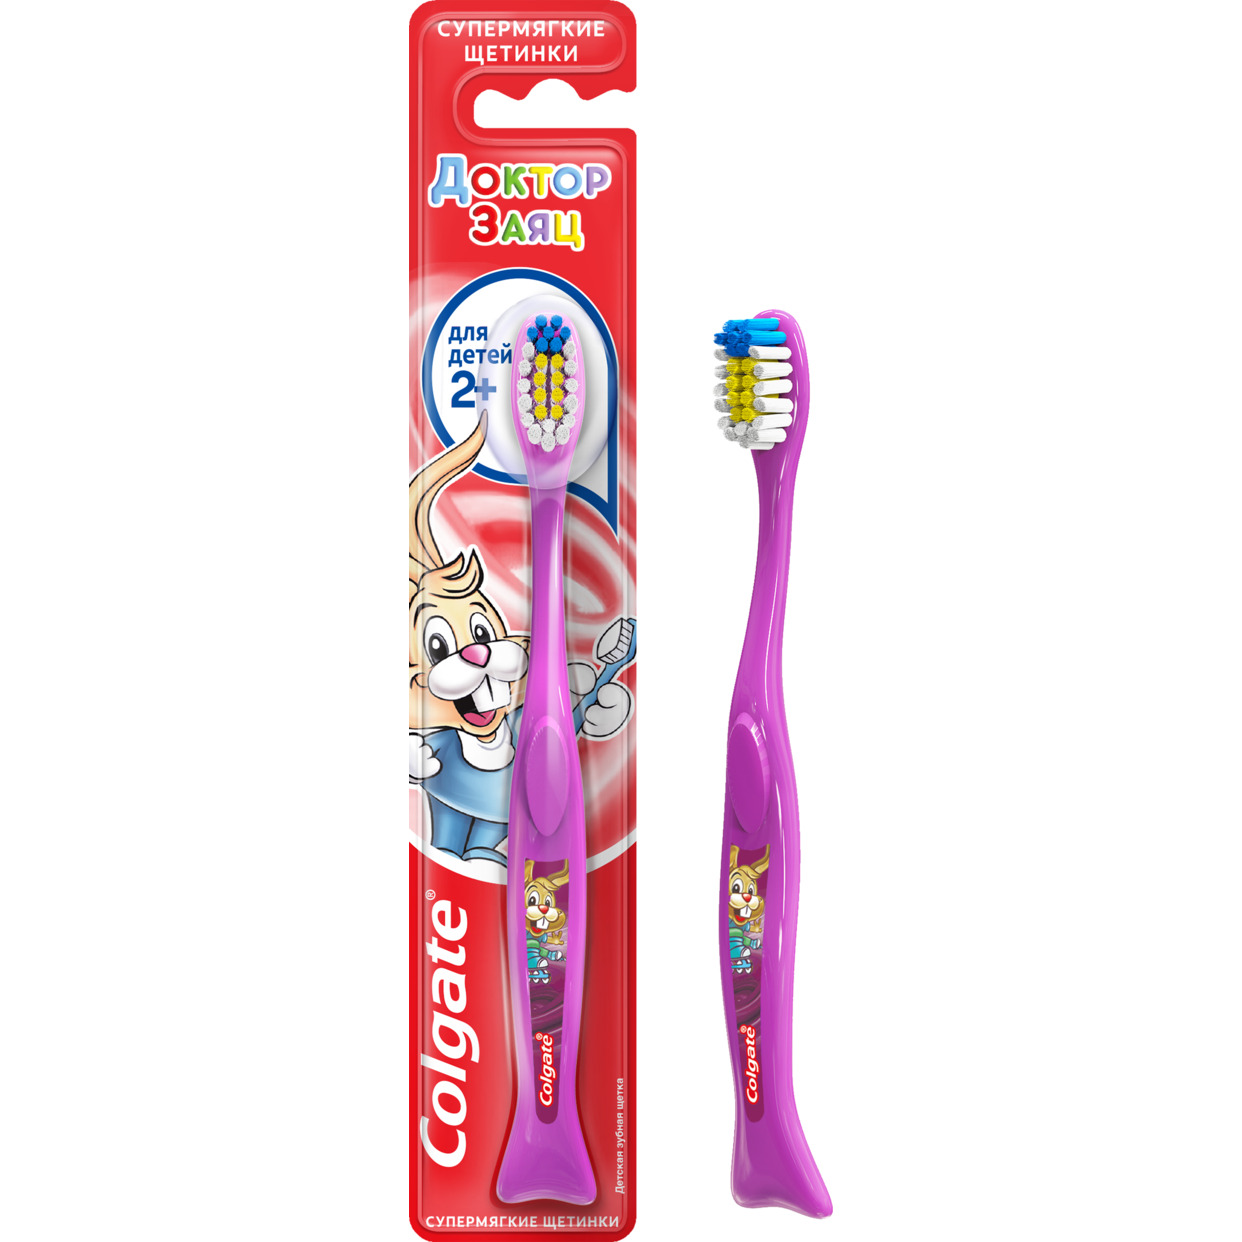 Зубная щетка Colgate Доктор Заяц для детей 2+ супермягкая в ассортименте